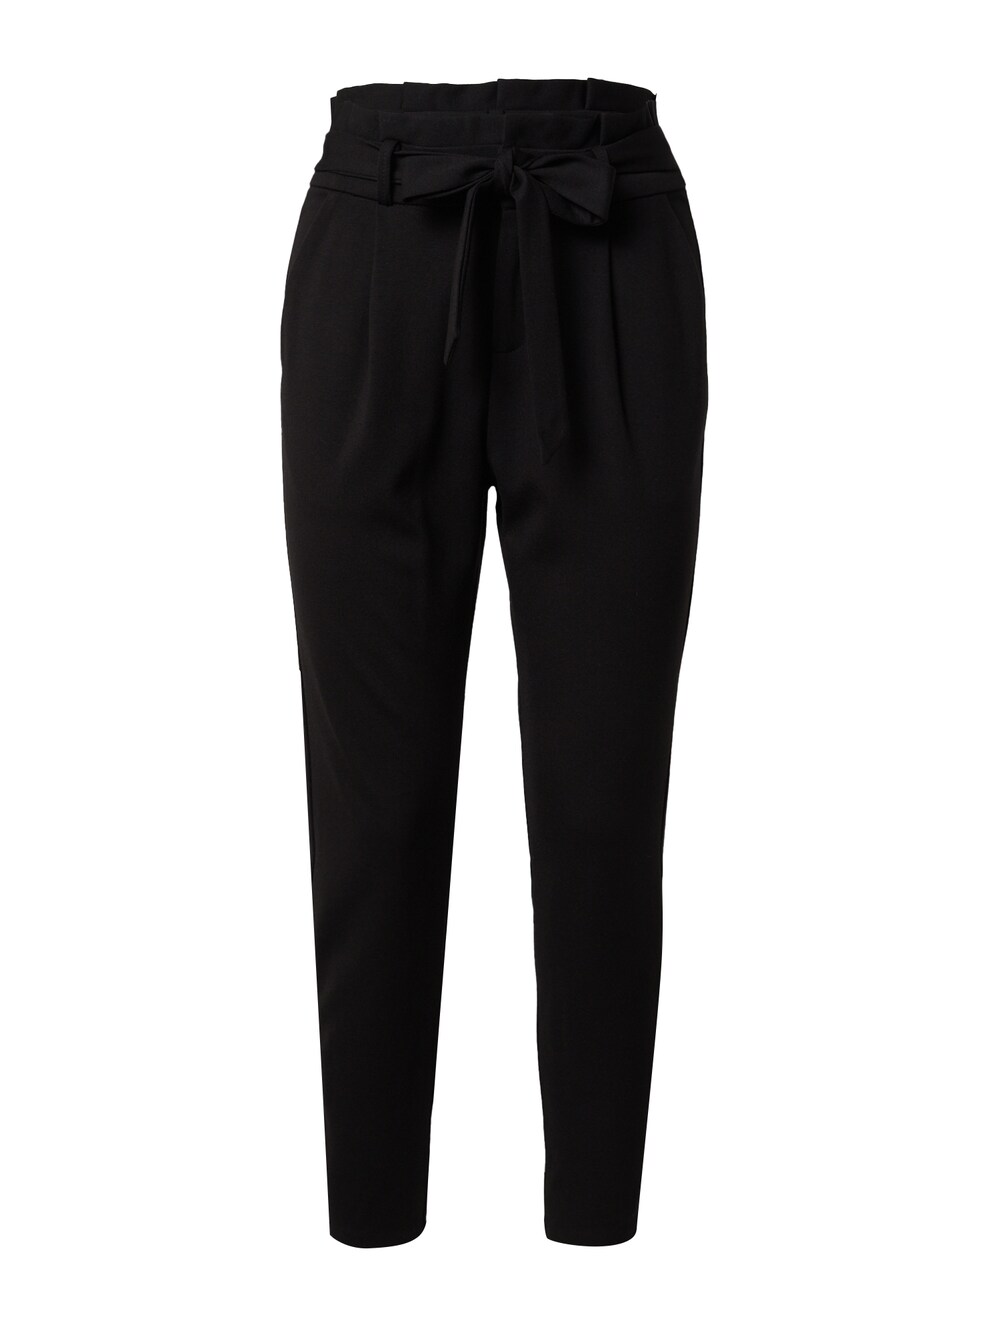 vero moda джемпер толстовка женский цвет черный размер xs Обычные брюки со складками спереди Vero Moda Eva, черный